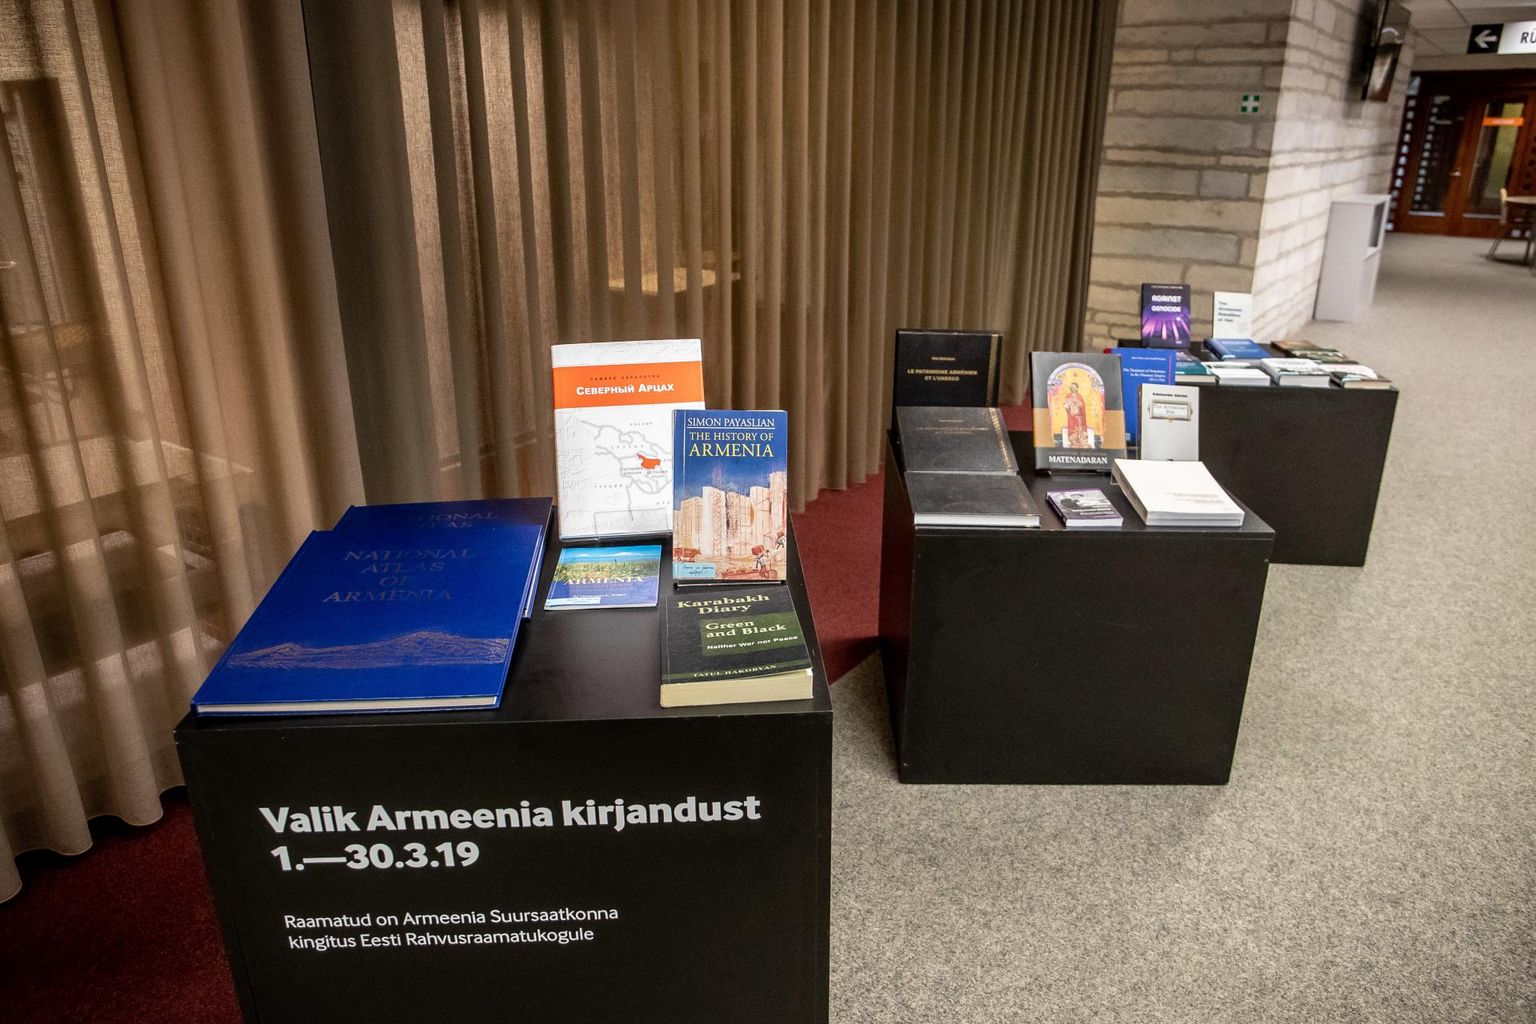 Armeenia kirjanduse väljapanek rahvusraamatukogu seitsmenda korruse lugemisalal.